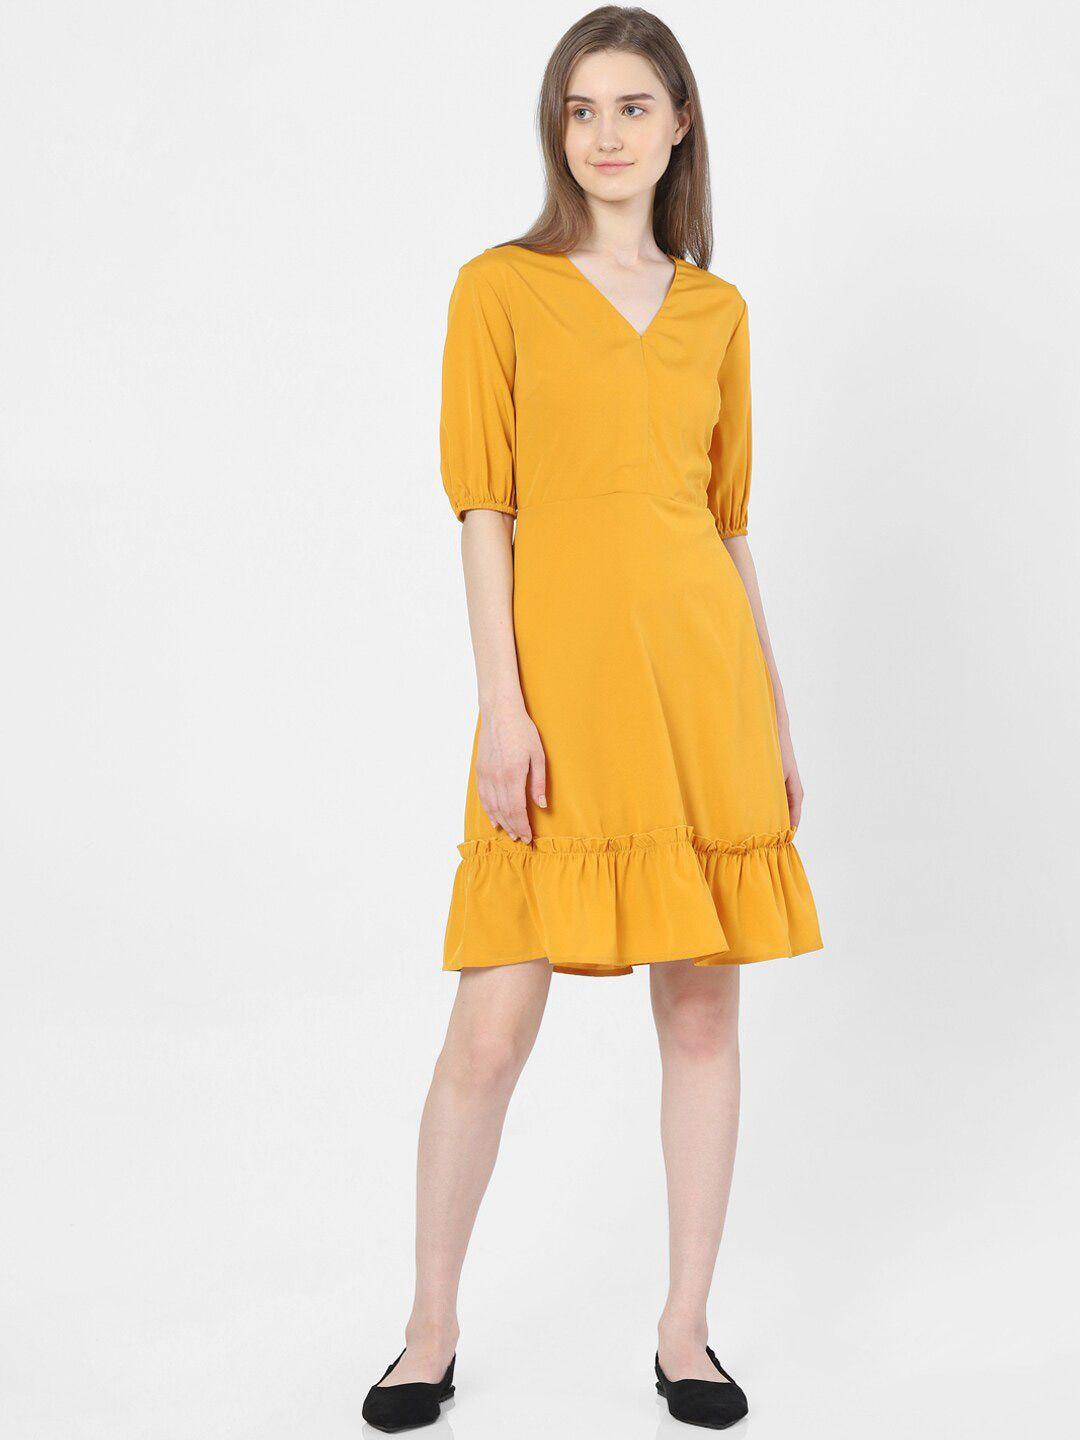 vero-moda-women-yellow-dress